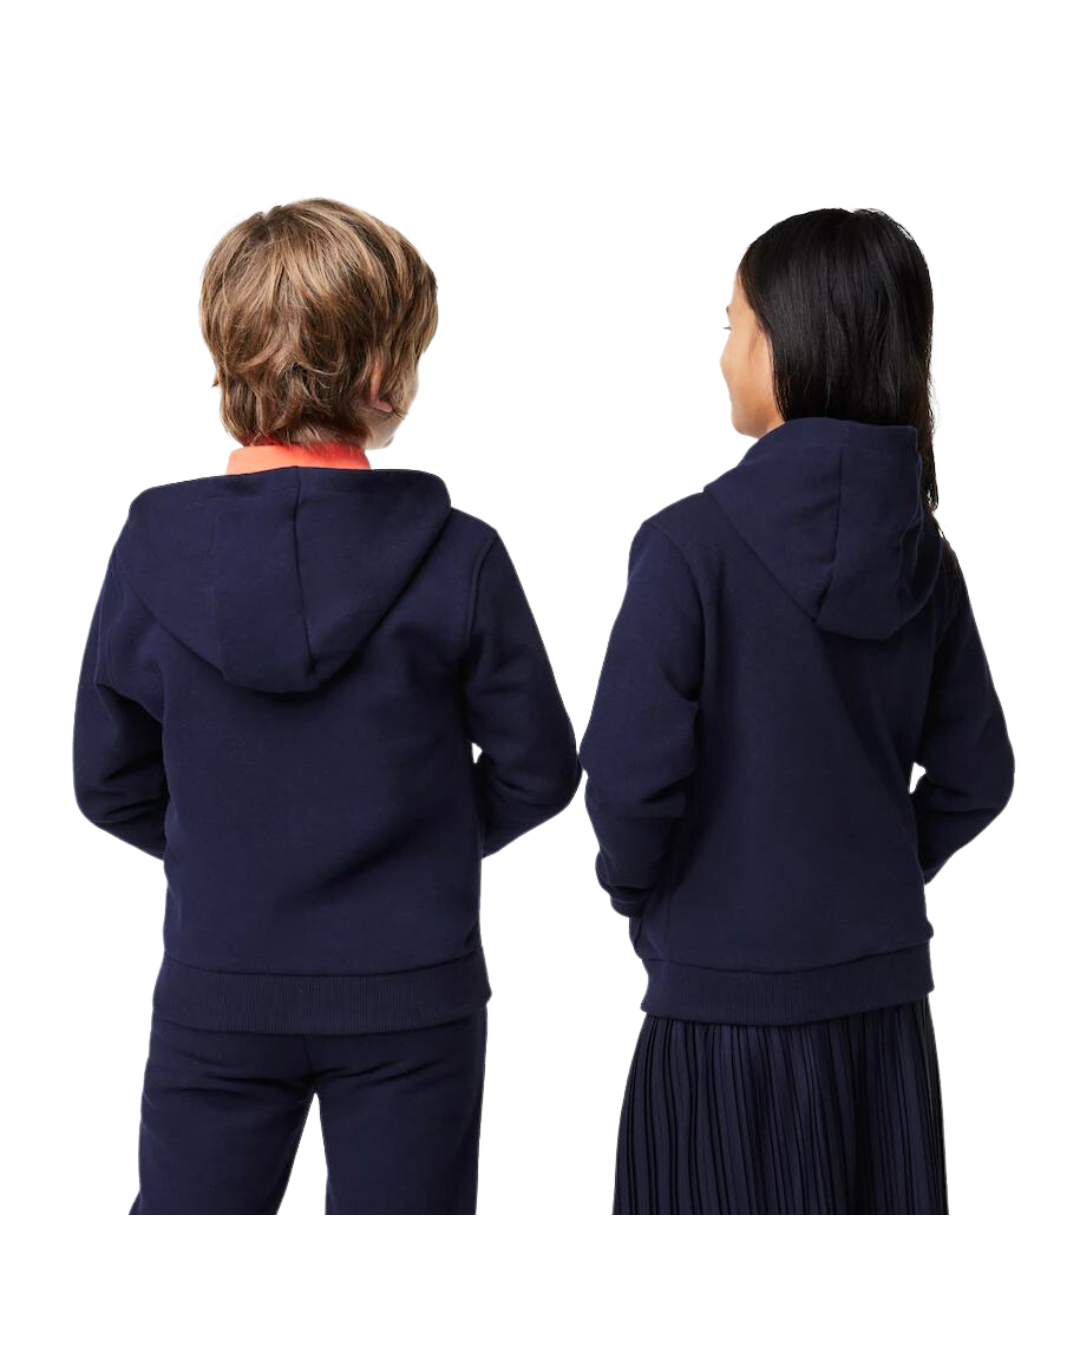 Lacoste Børne Kangaroo Pocket Sweatshirt med hætte og lynlås